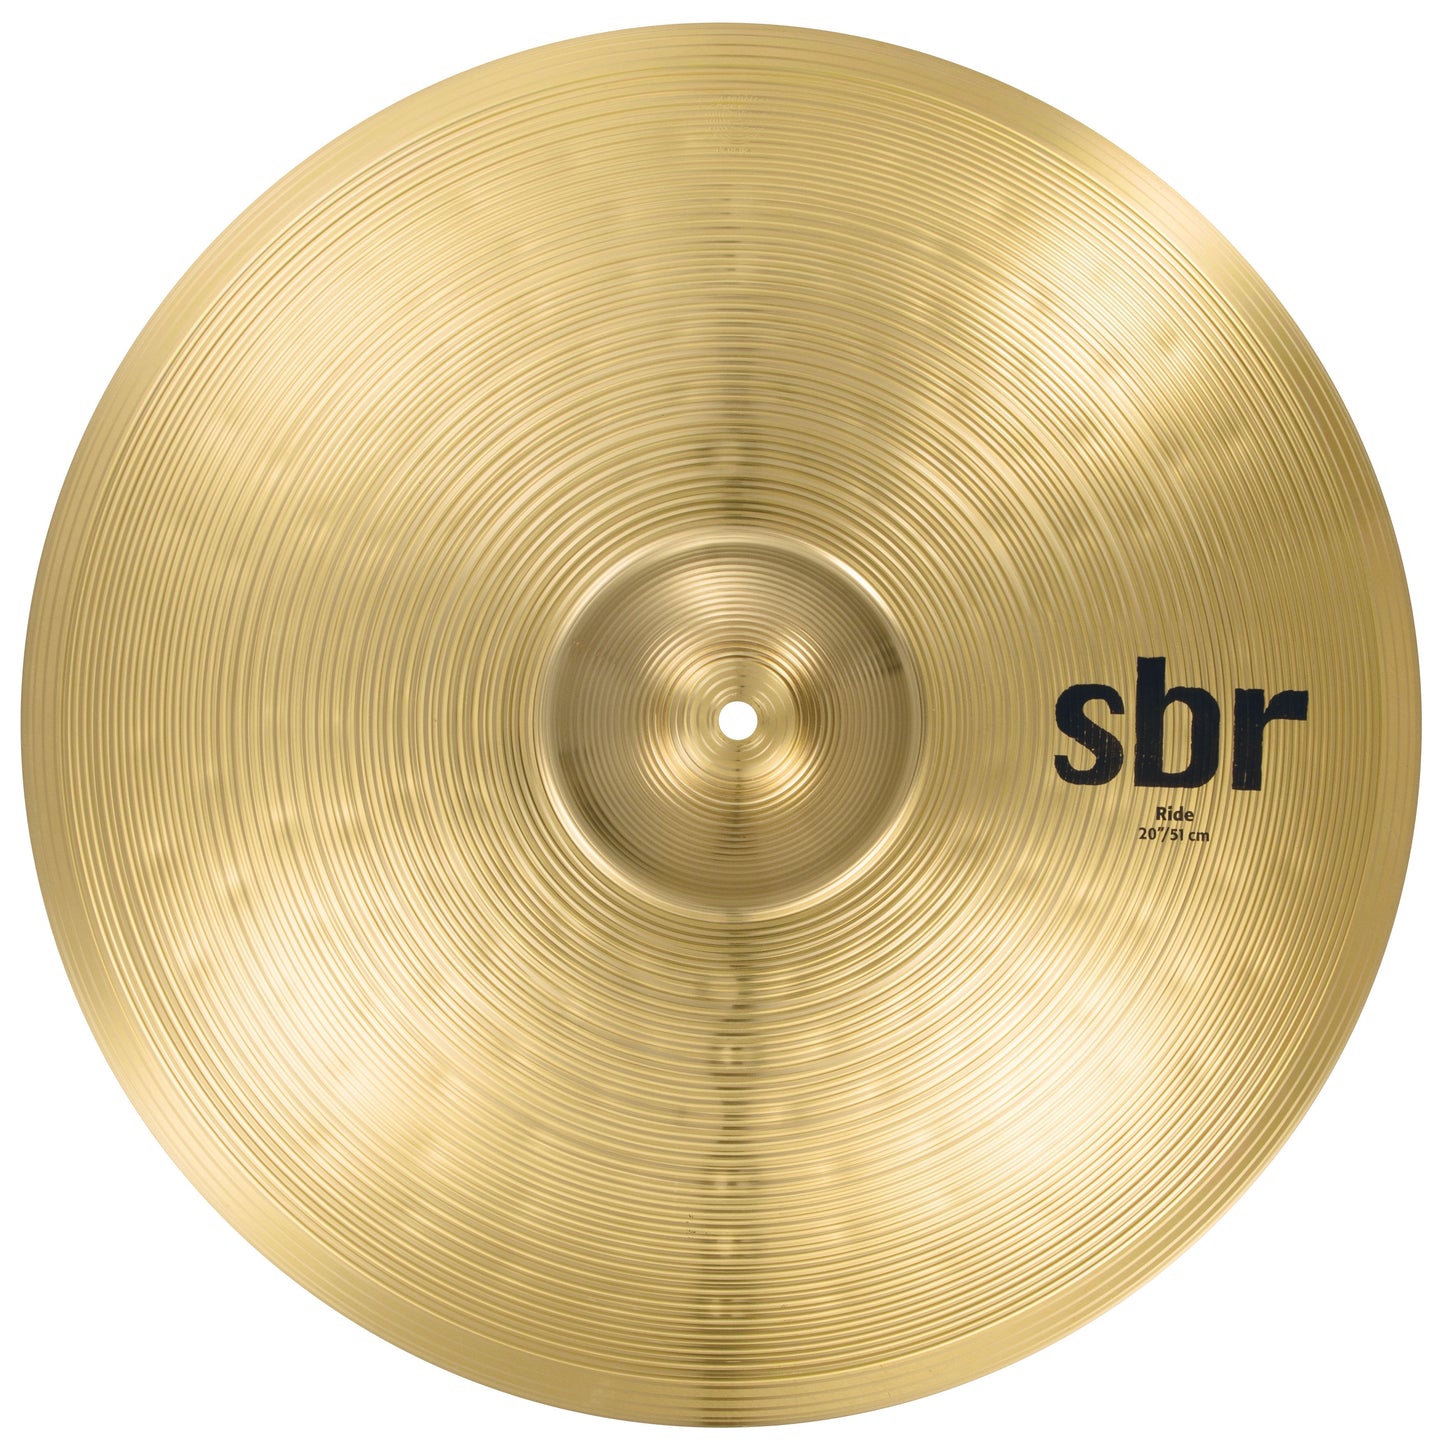 Sabian SBR Ride Cymbal, 20 Inch